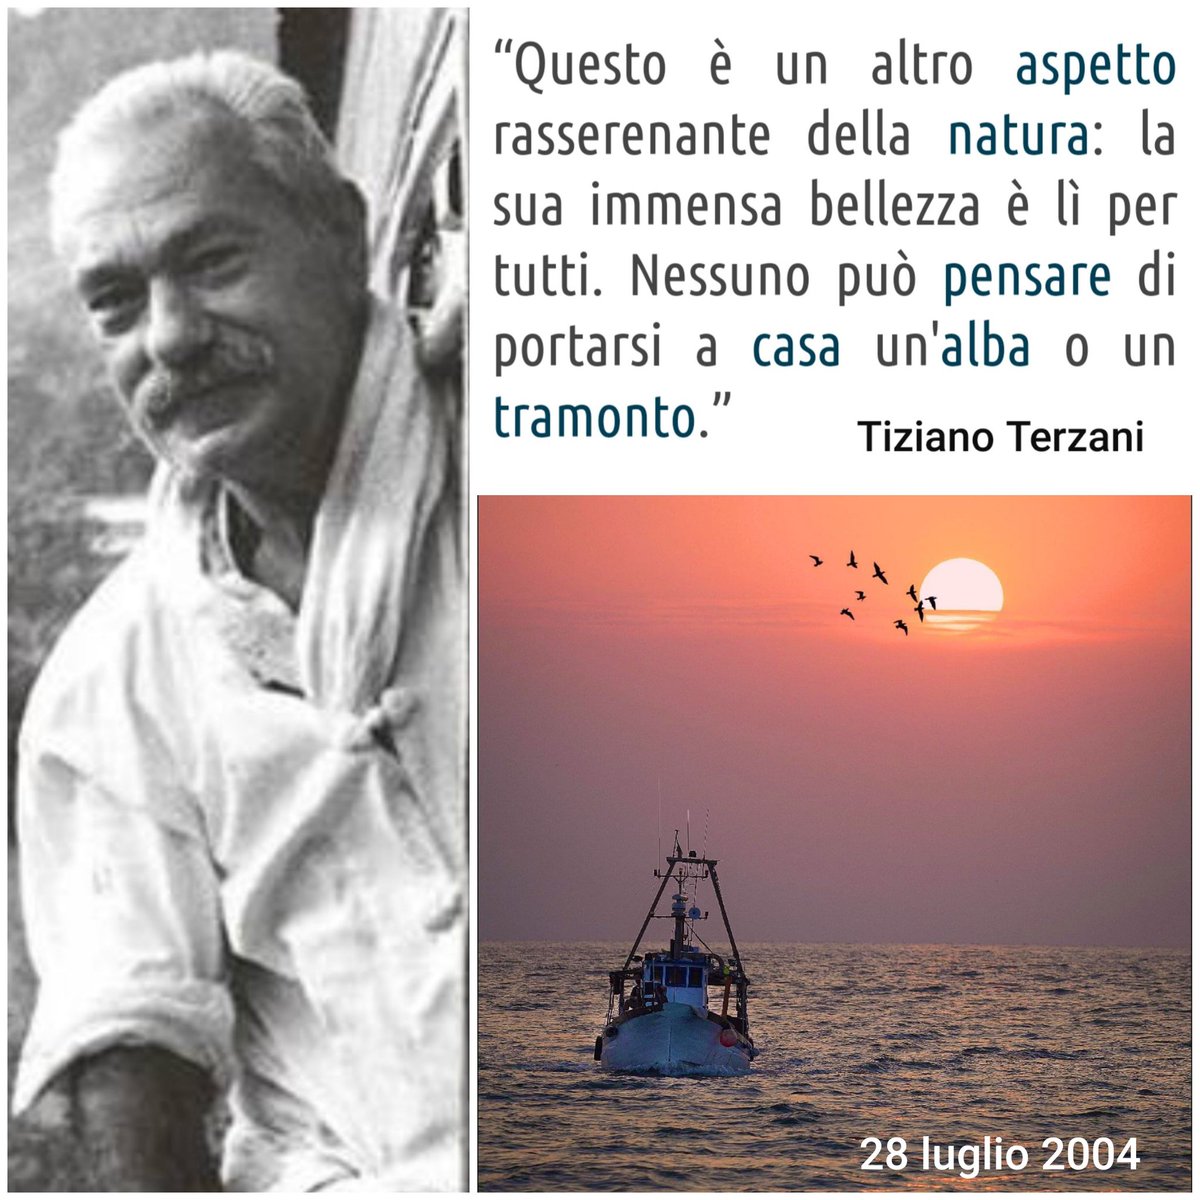 #28luglio 2004 
Muore Tiziano Terzani giornalista,scrittore,corrispondente all'estero grande conoscitore del mondo Asiatico 🙏❤